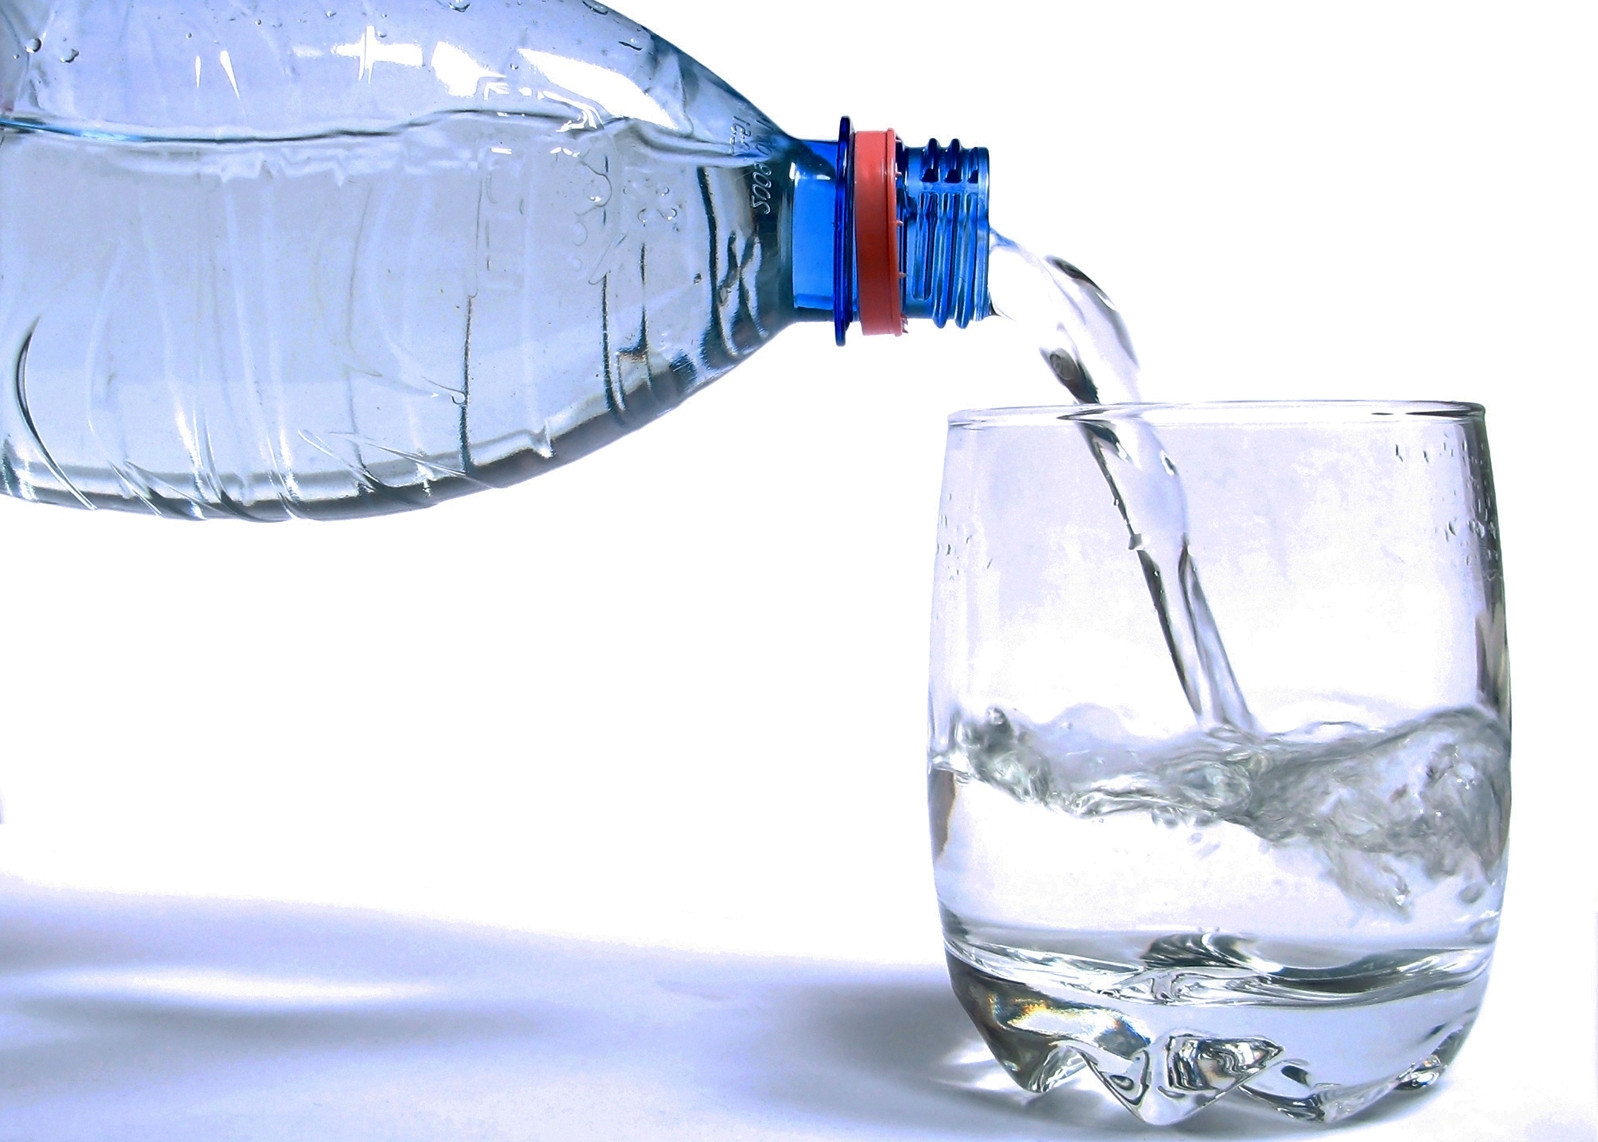 Yetersiz Kan Dolaşımı Nedeniyle Elleriniz ve Ayaklarınız Hep Soğuk Mu? İşte Size Çözüm! Drinking-water